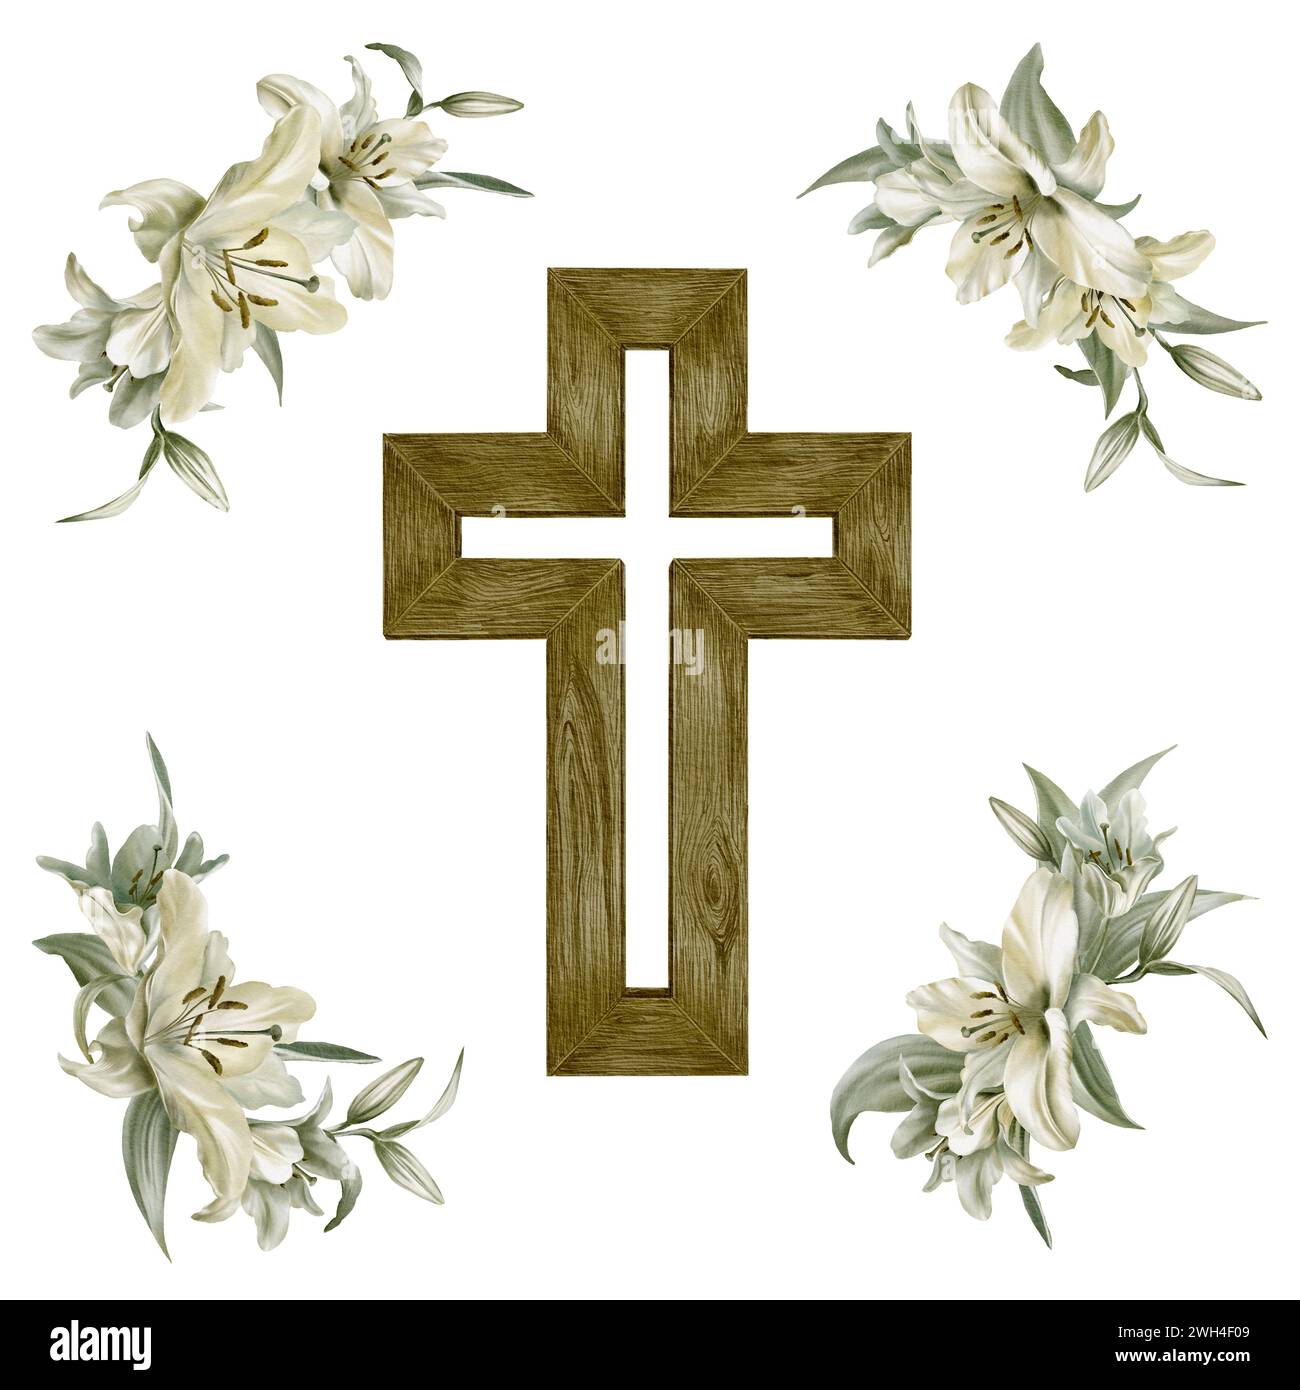 Croce cristiana in legno con composizioni di fiori di giglio bianchi. Il simbolo cattolico o ortodosso dipinto a mano per la prima comunità, il battesimo e la Pasqua Foto Stock